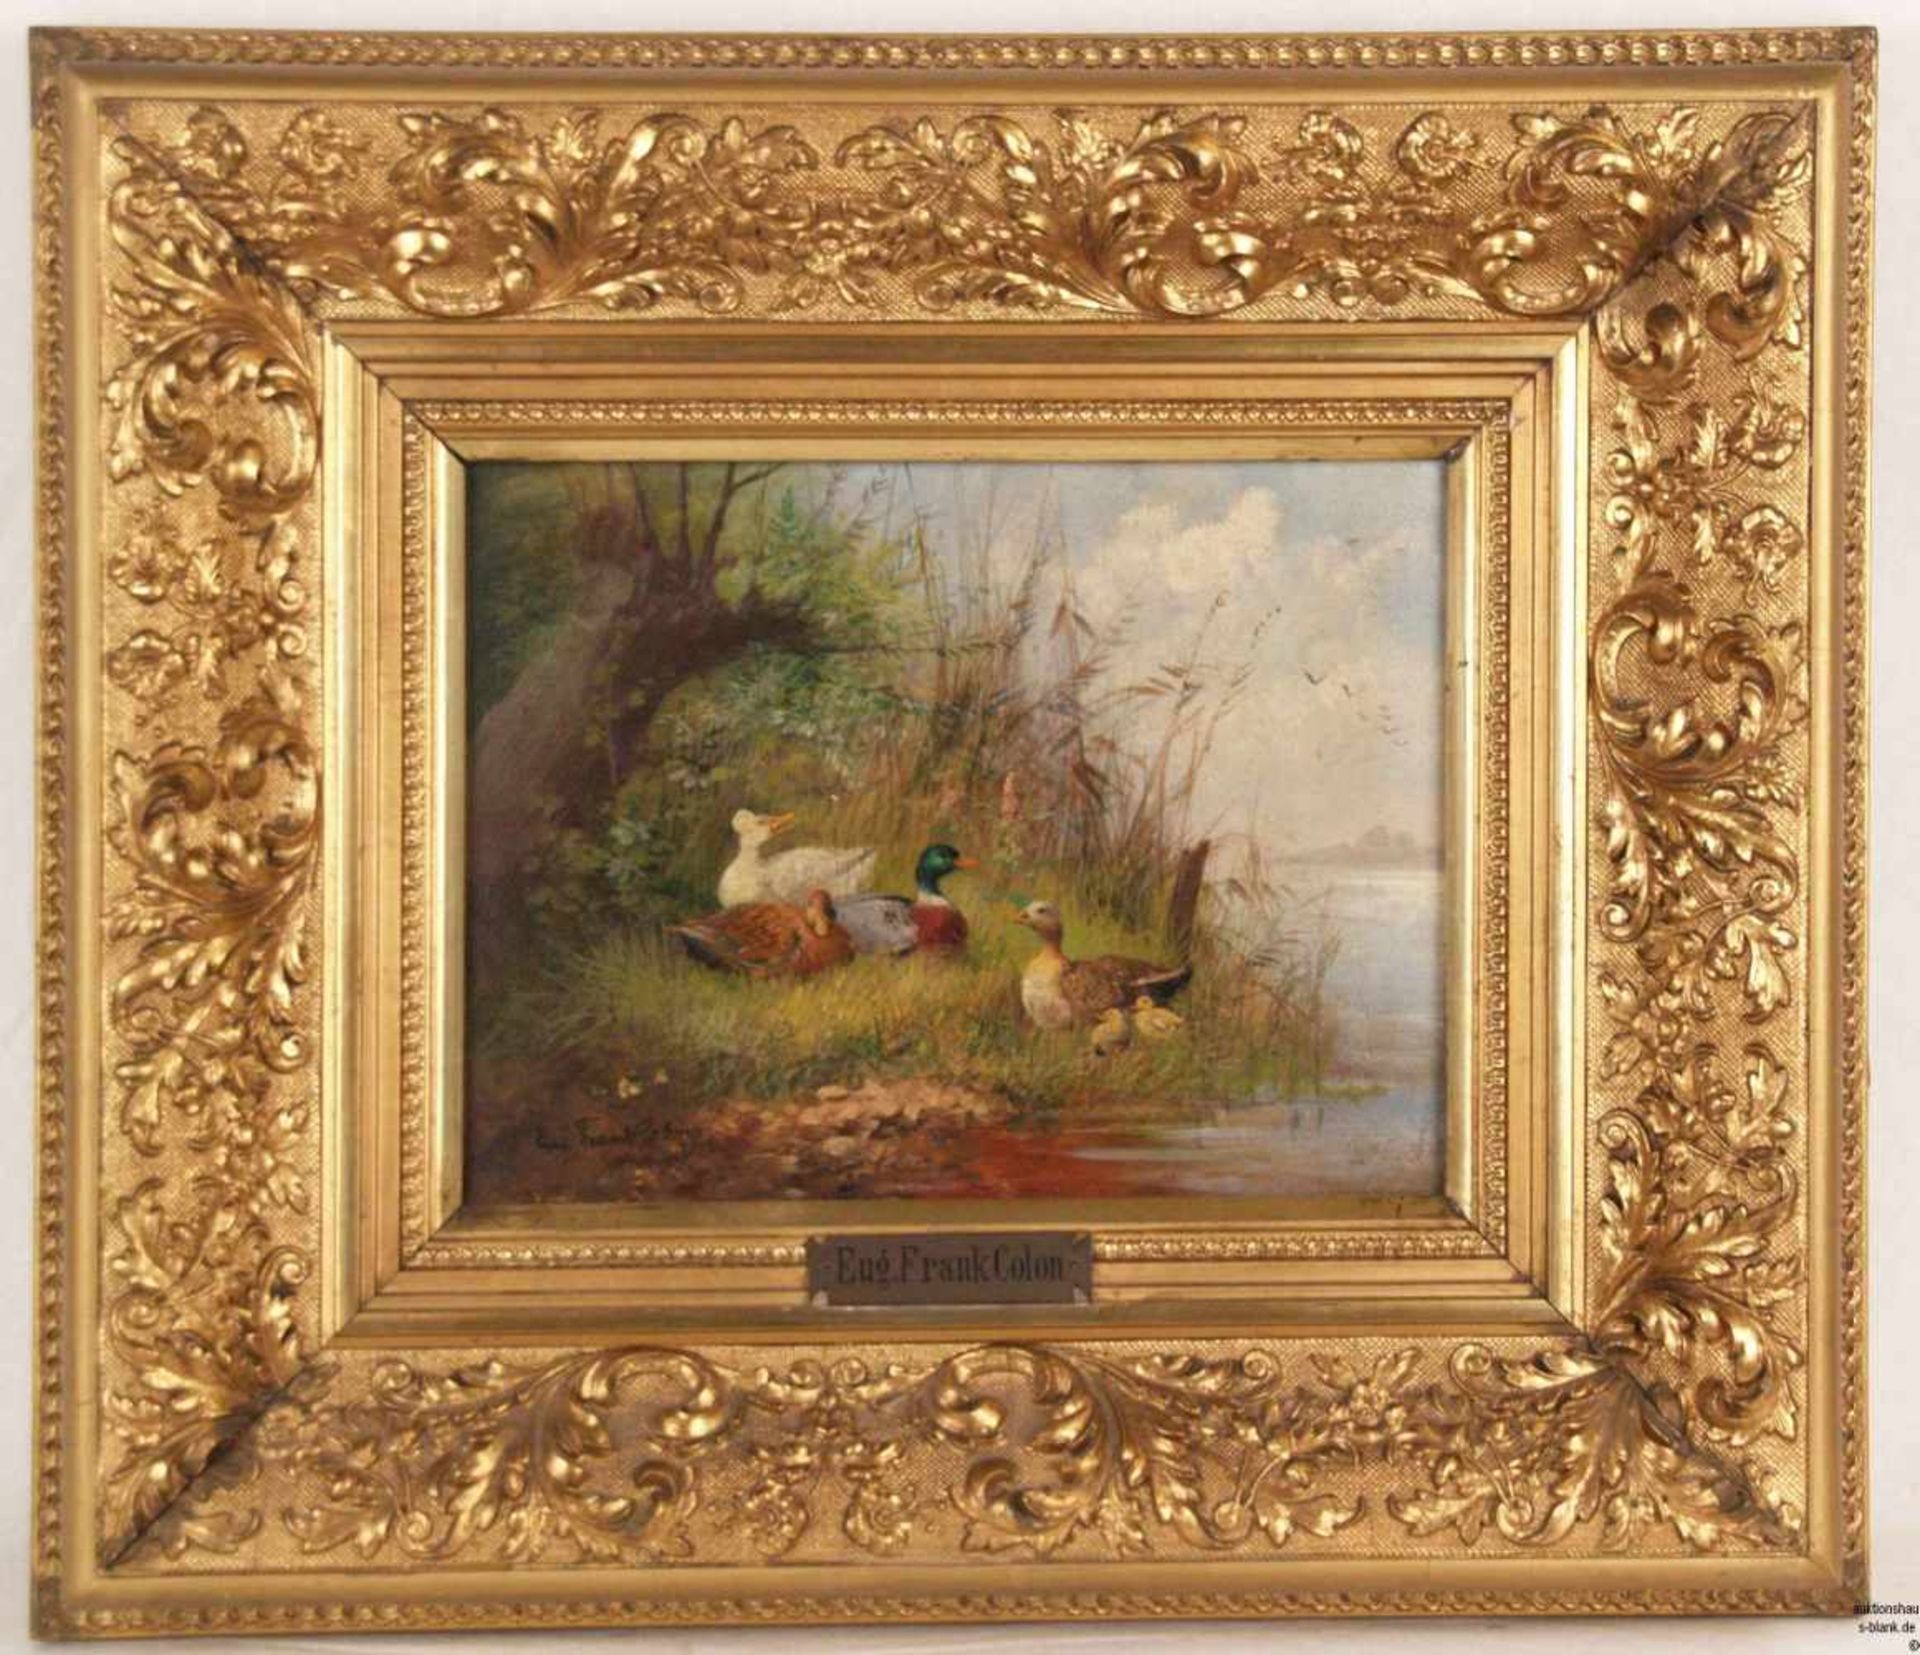 Frank-Colon, Eugen (um 1900/Tiermaler in Düsseldorf und München) - Entenfamilie am Flußufer, Öl - Bild 2 aus 5